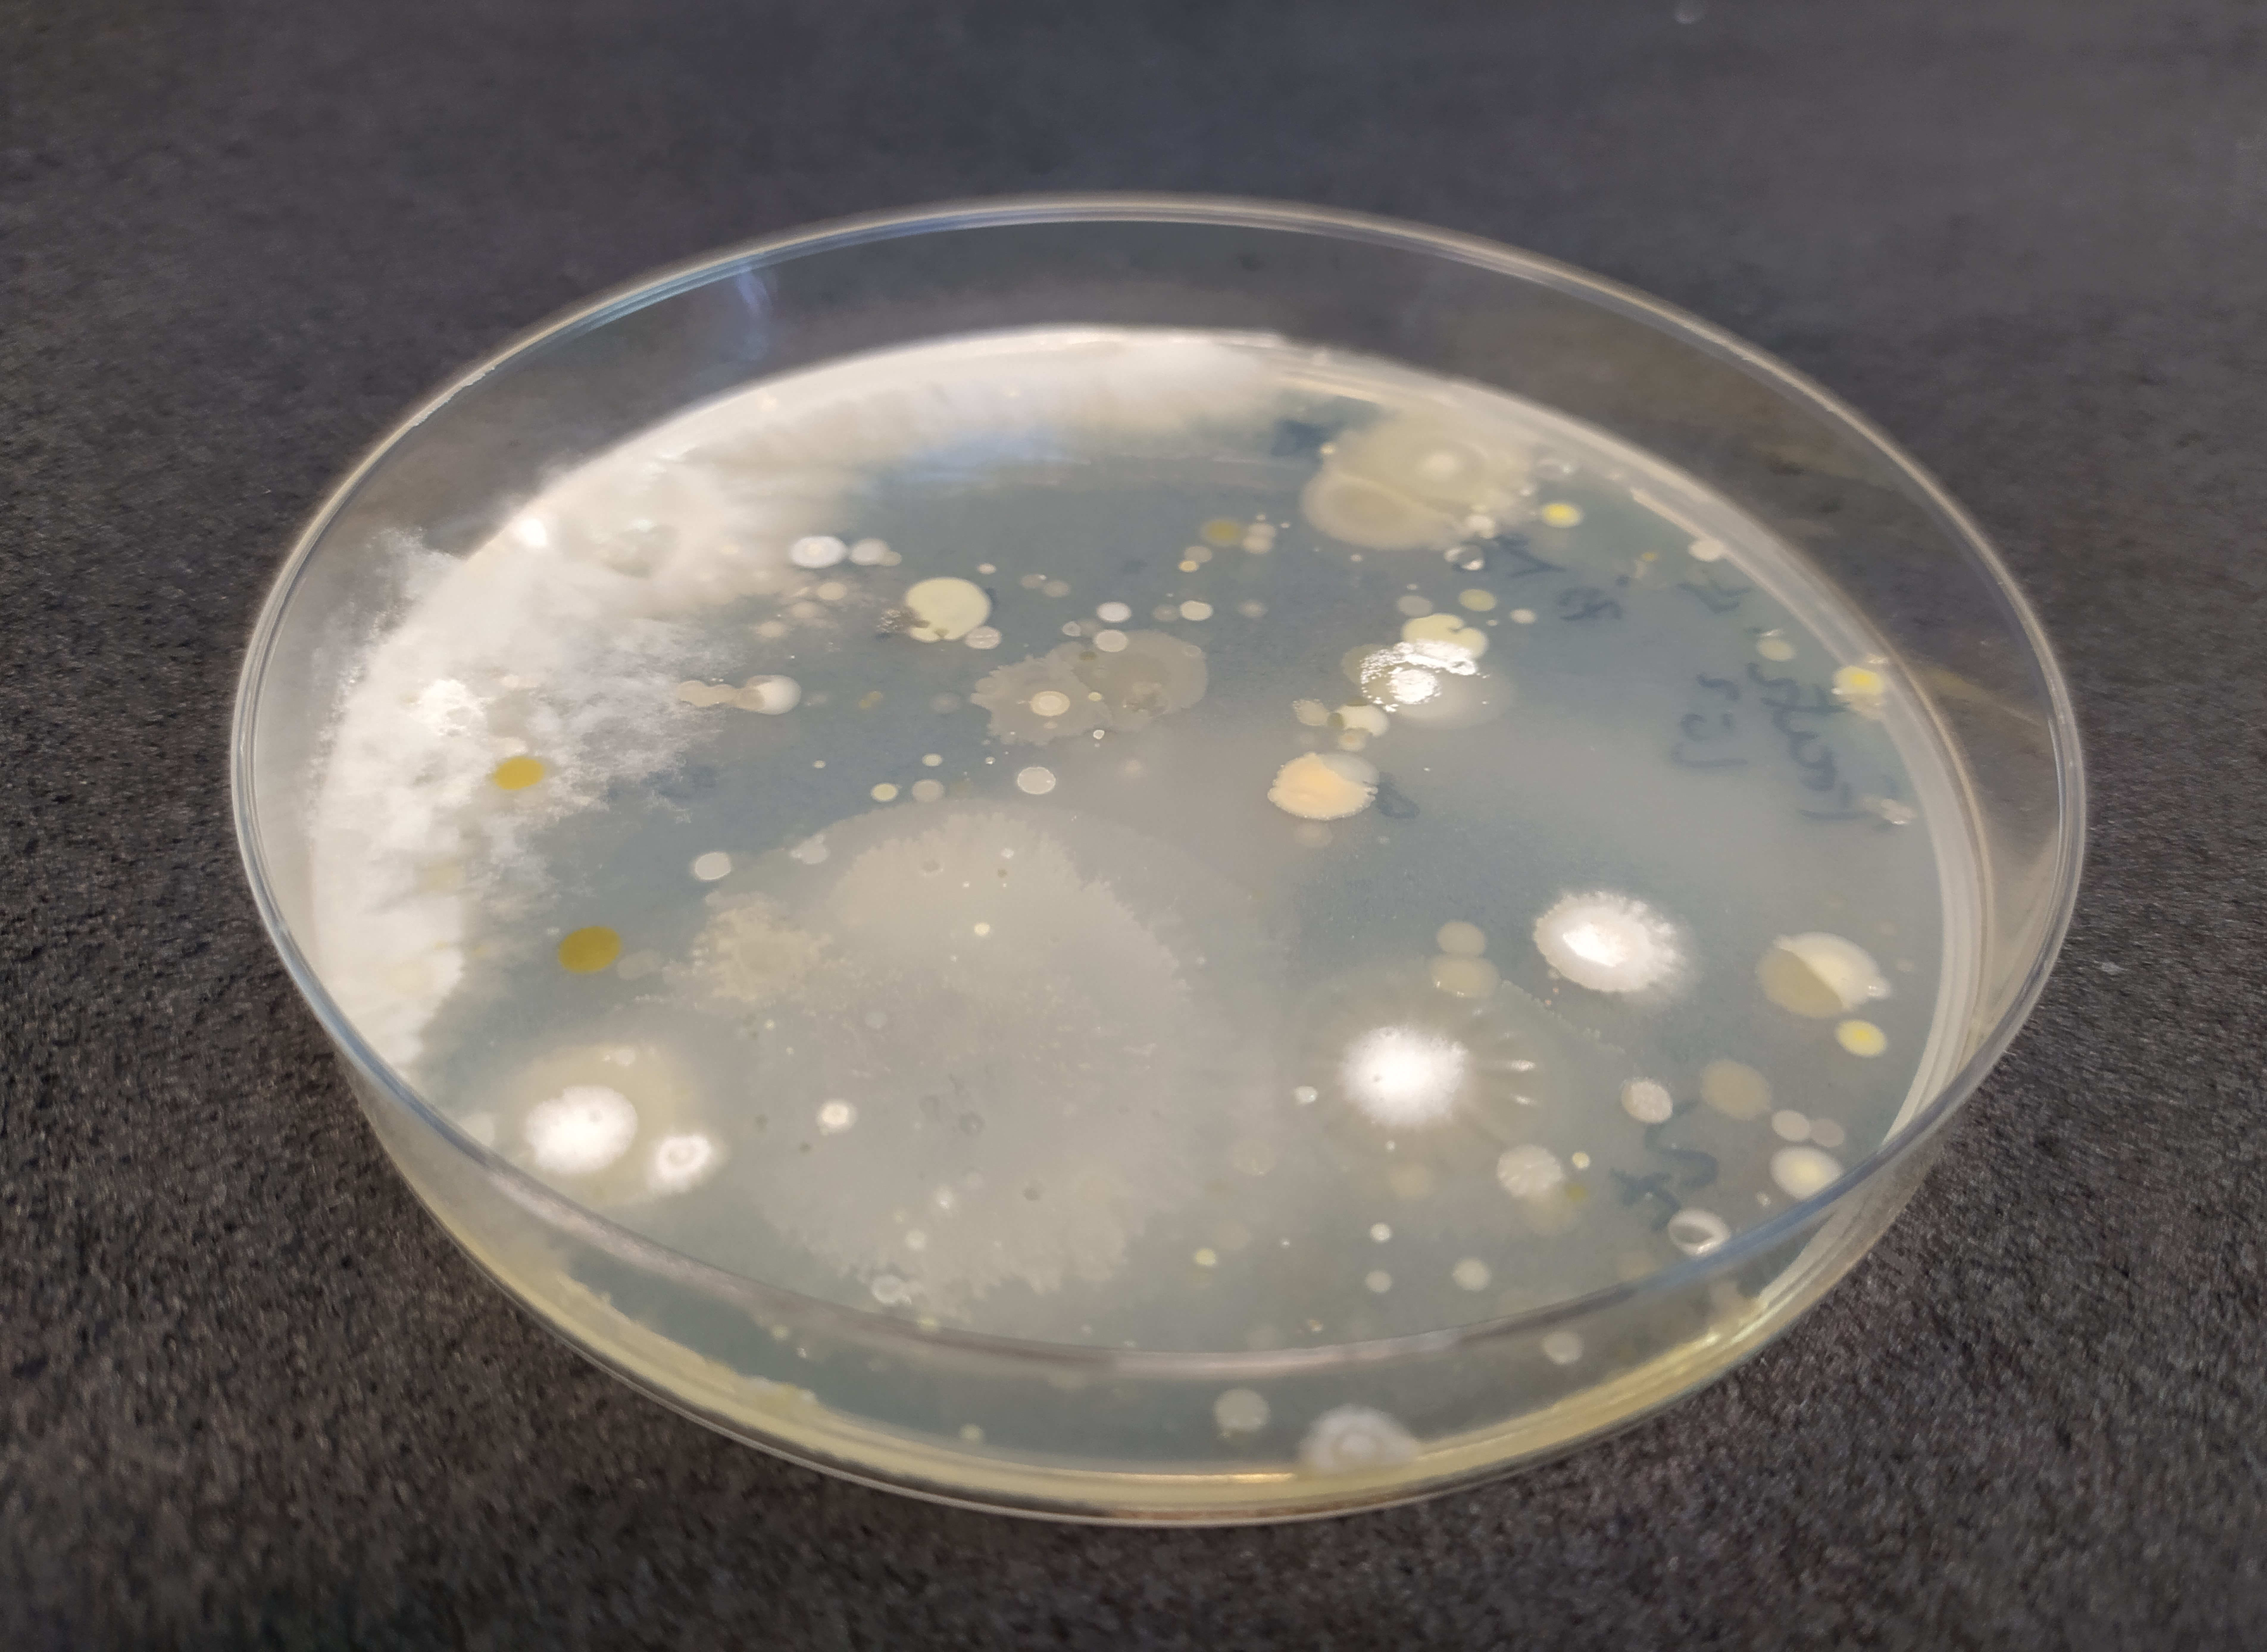 Foto 2. Bacterias rizosfricas fijadoras de nitrgeno cultivadas en laboratorio